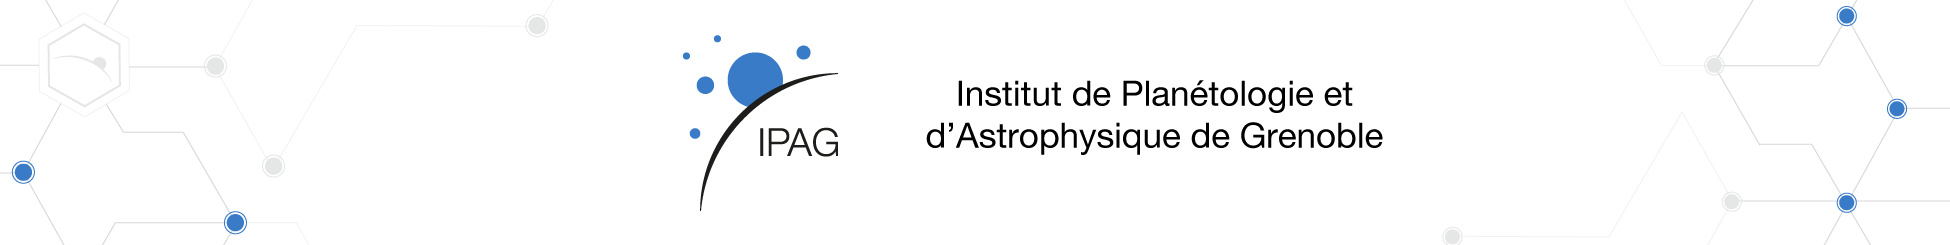 IPAG - Institut de Planétologie et d’Astrophysique de Grenoble